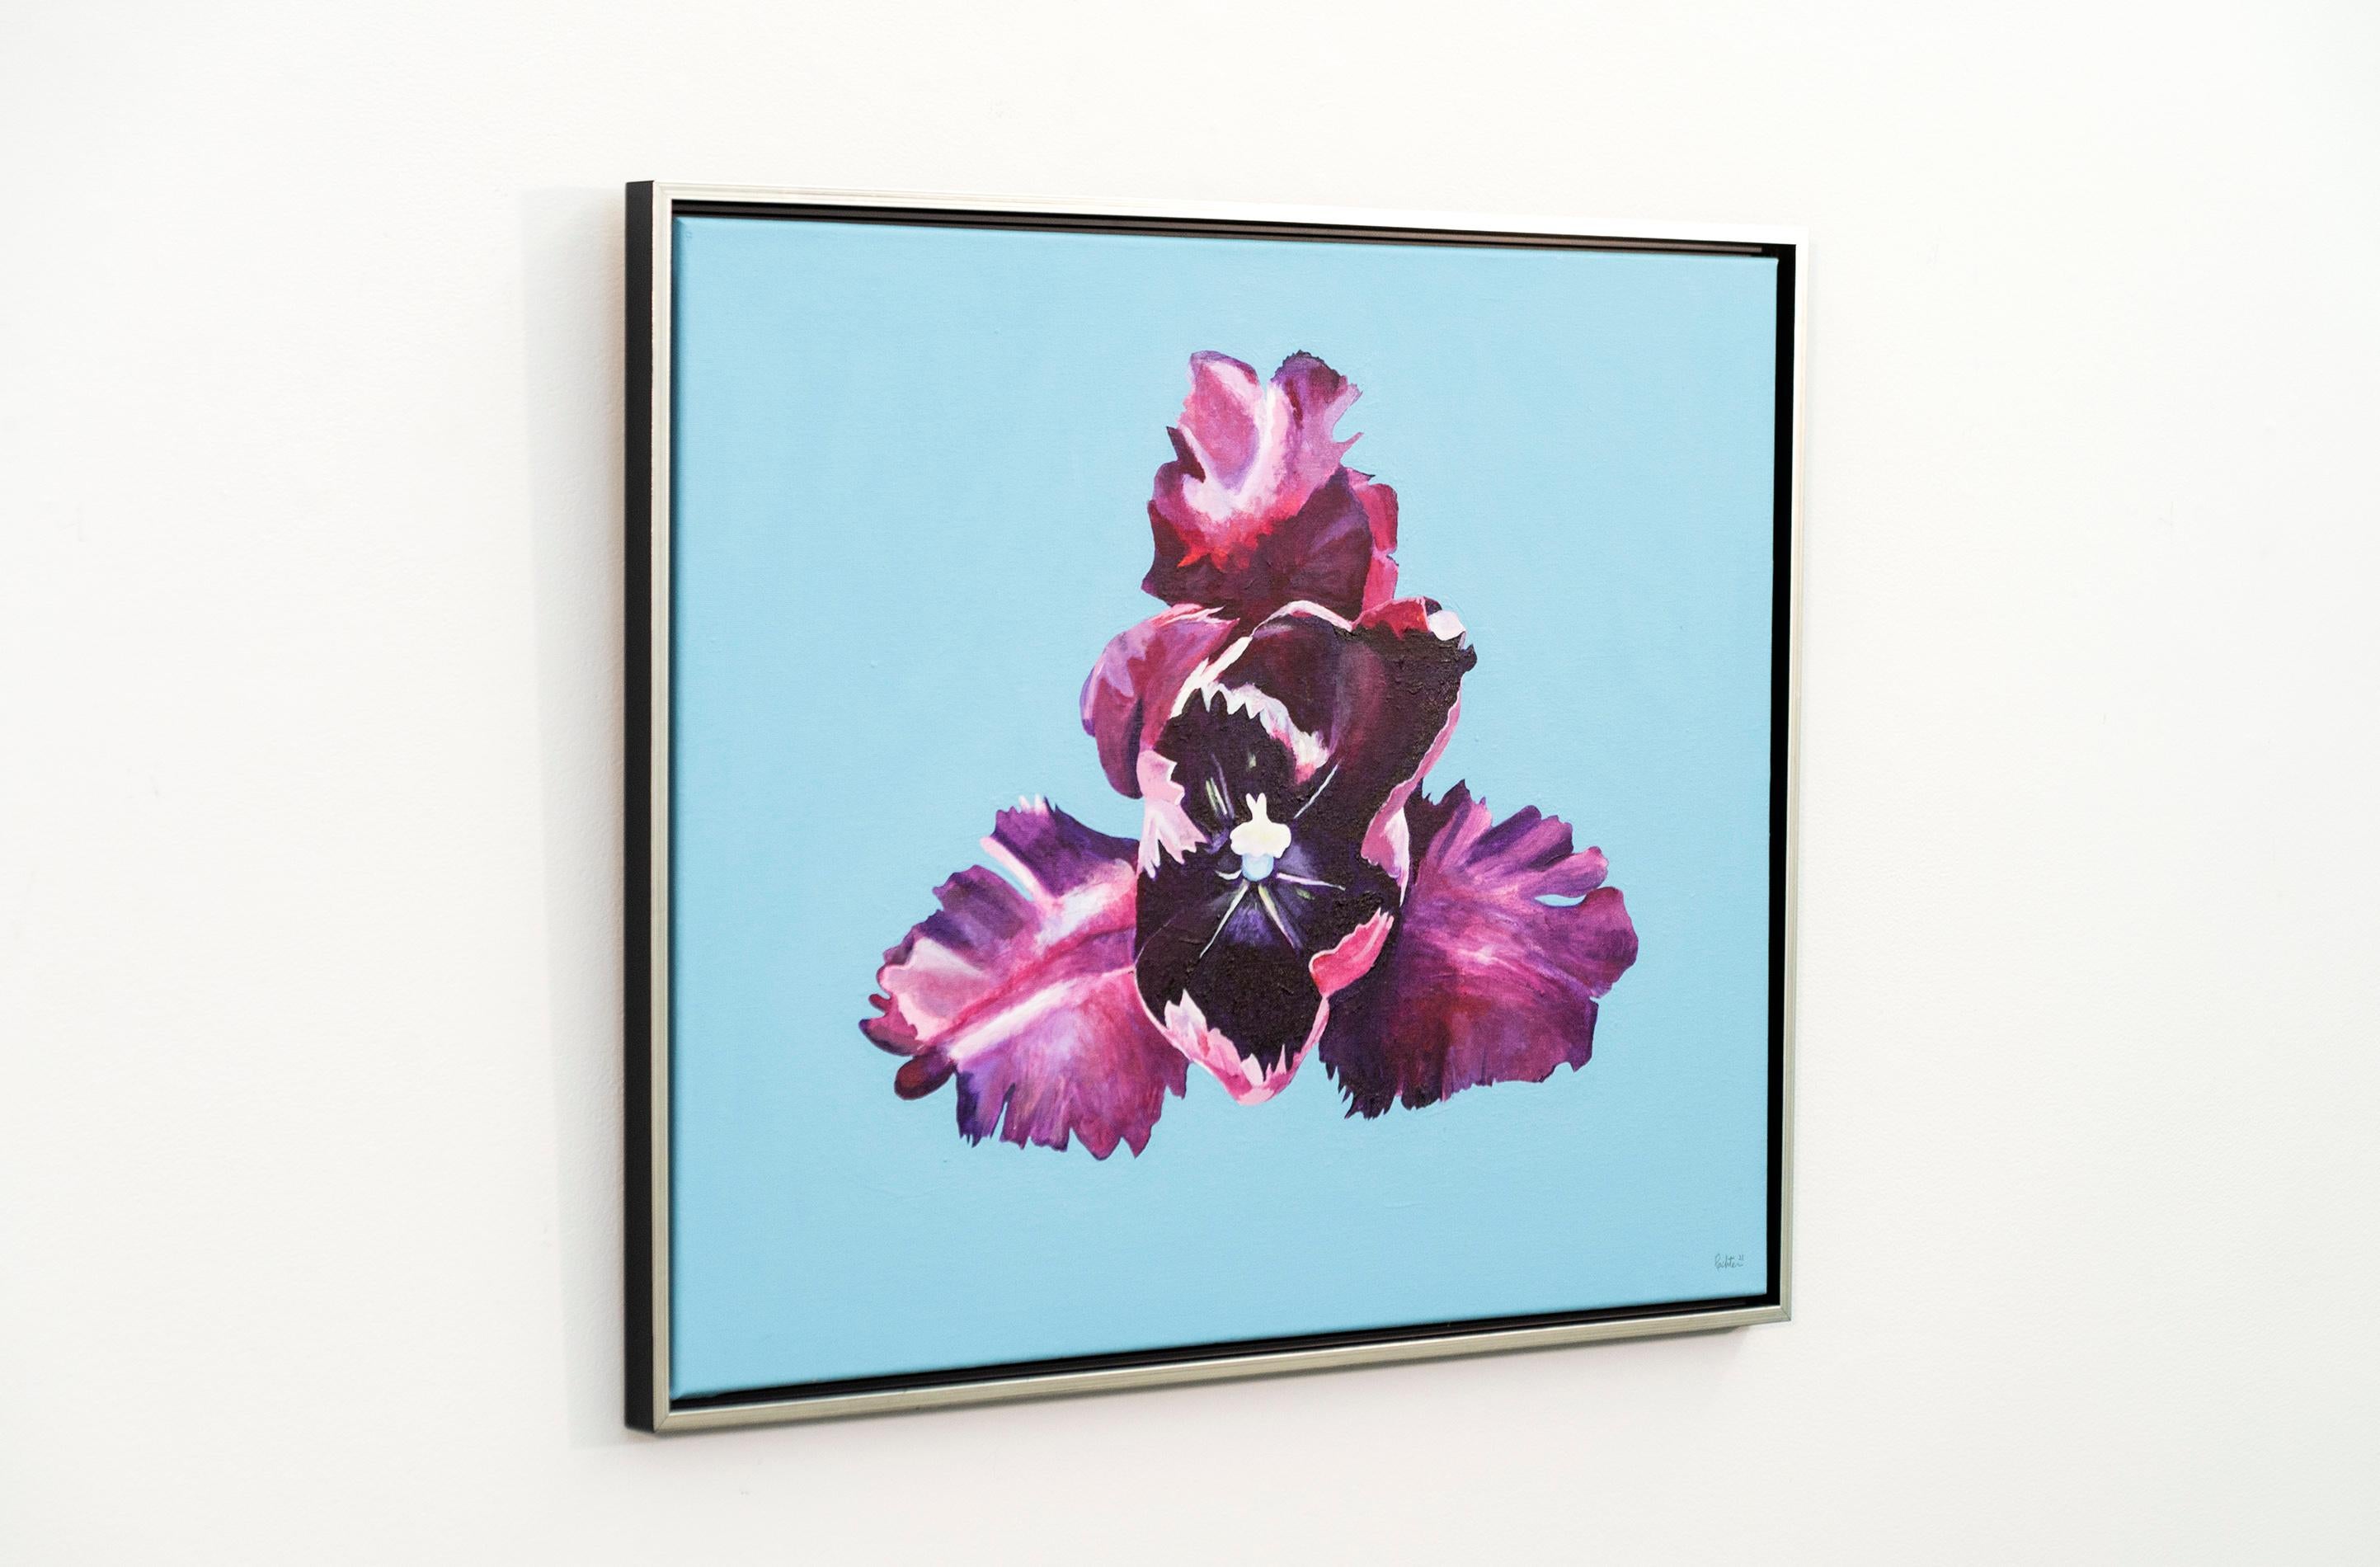 Iris - Blumen, Pop-Art, Frühling, zeitgenössisch, Acryl auf Leinwand (Zeitgenössisch), Painting, von Charles Pachter